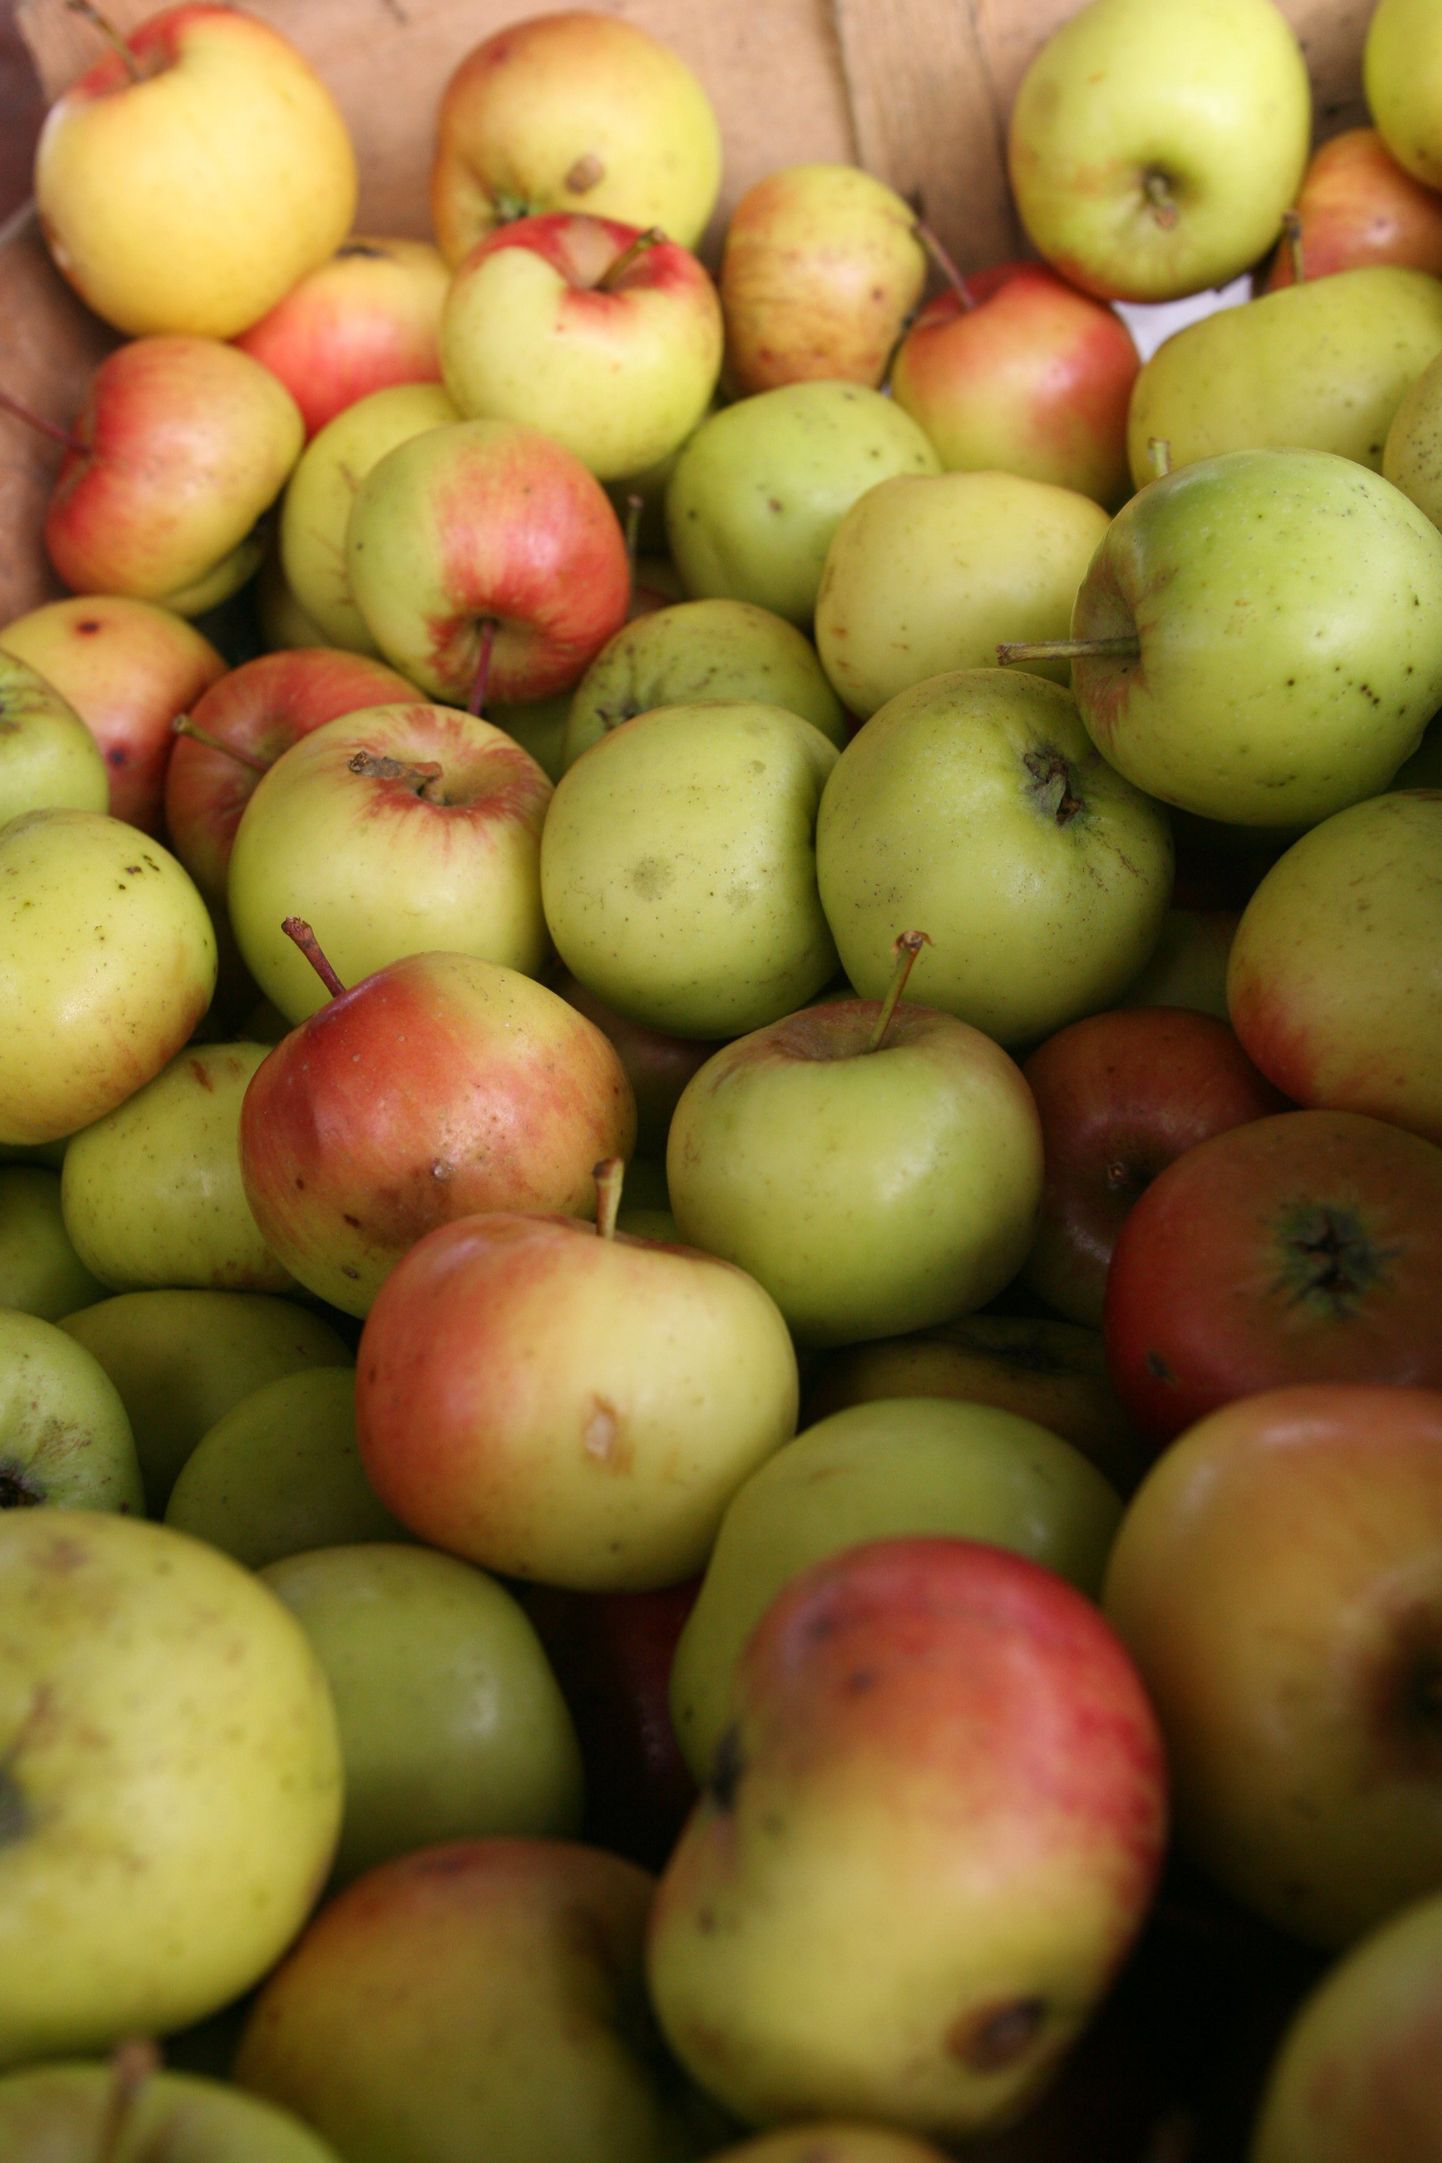 Vigastustega õunad võivad olla nakatunud hallitusseentega, mis omakorda toodavad inimese tervist kahjustavat mükotoksiini nimega patuliin. Seetõttu võiks süüa ja hoidistada vaid hea kvaliteediga õunu.